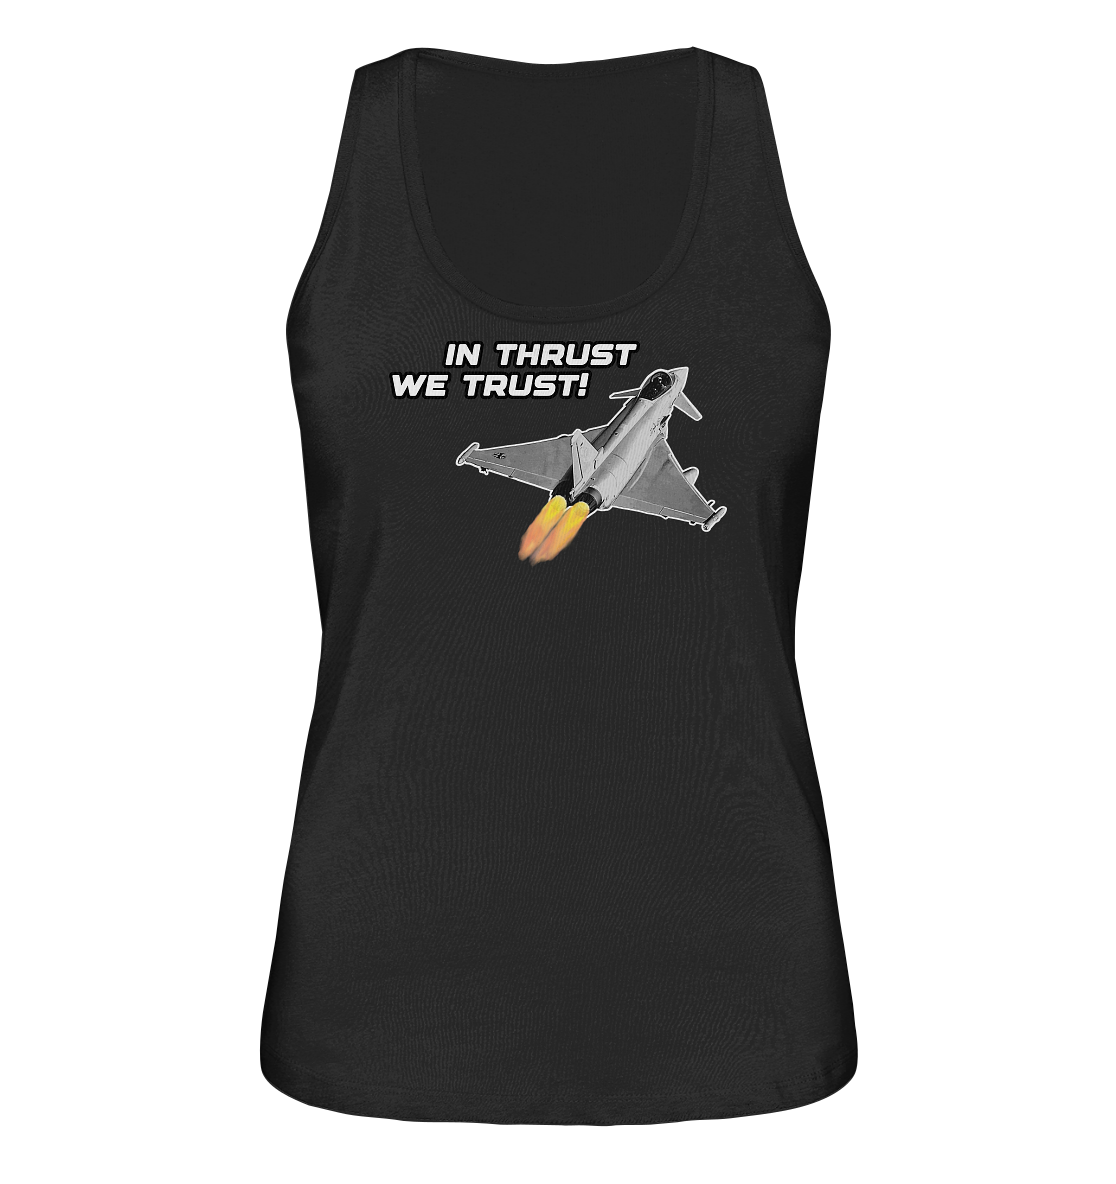 In thrust we trust - Ladies Organic Tank-Top